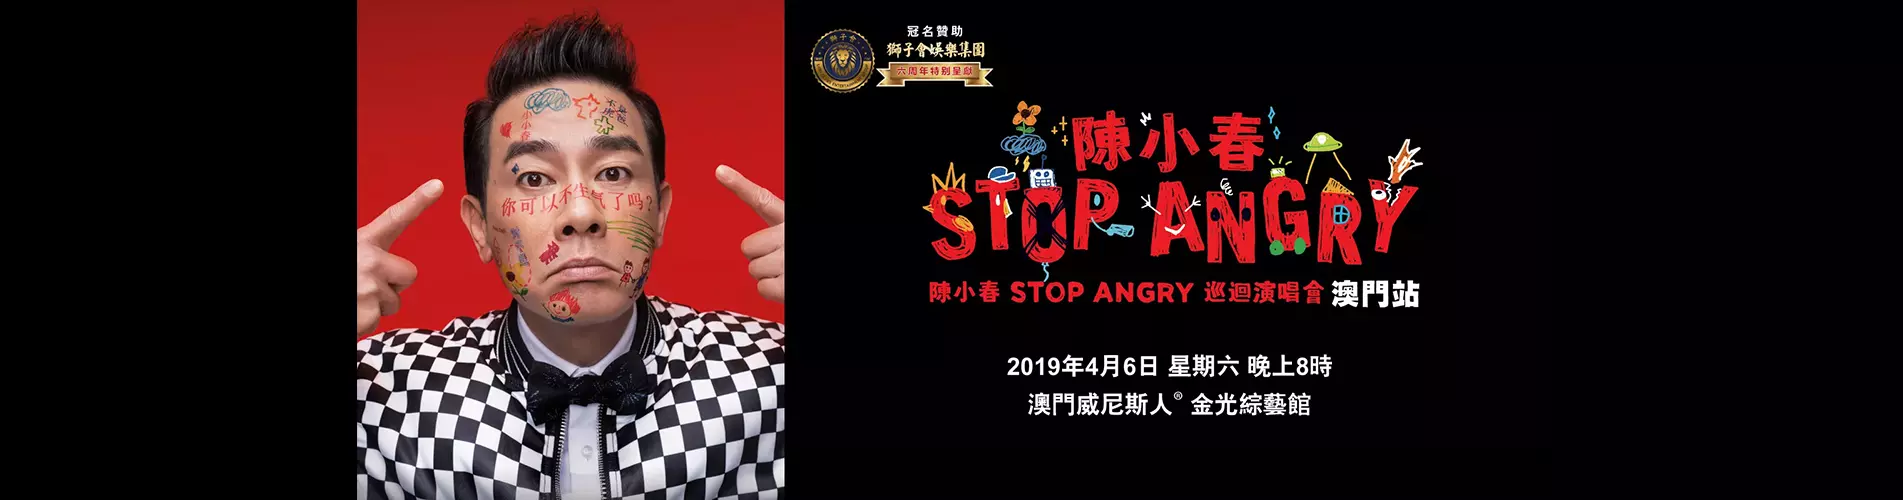 陳小春 STOP ANGRY 巡迴演唱會 - 澳門站